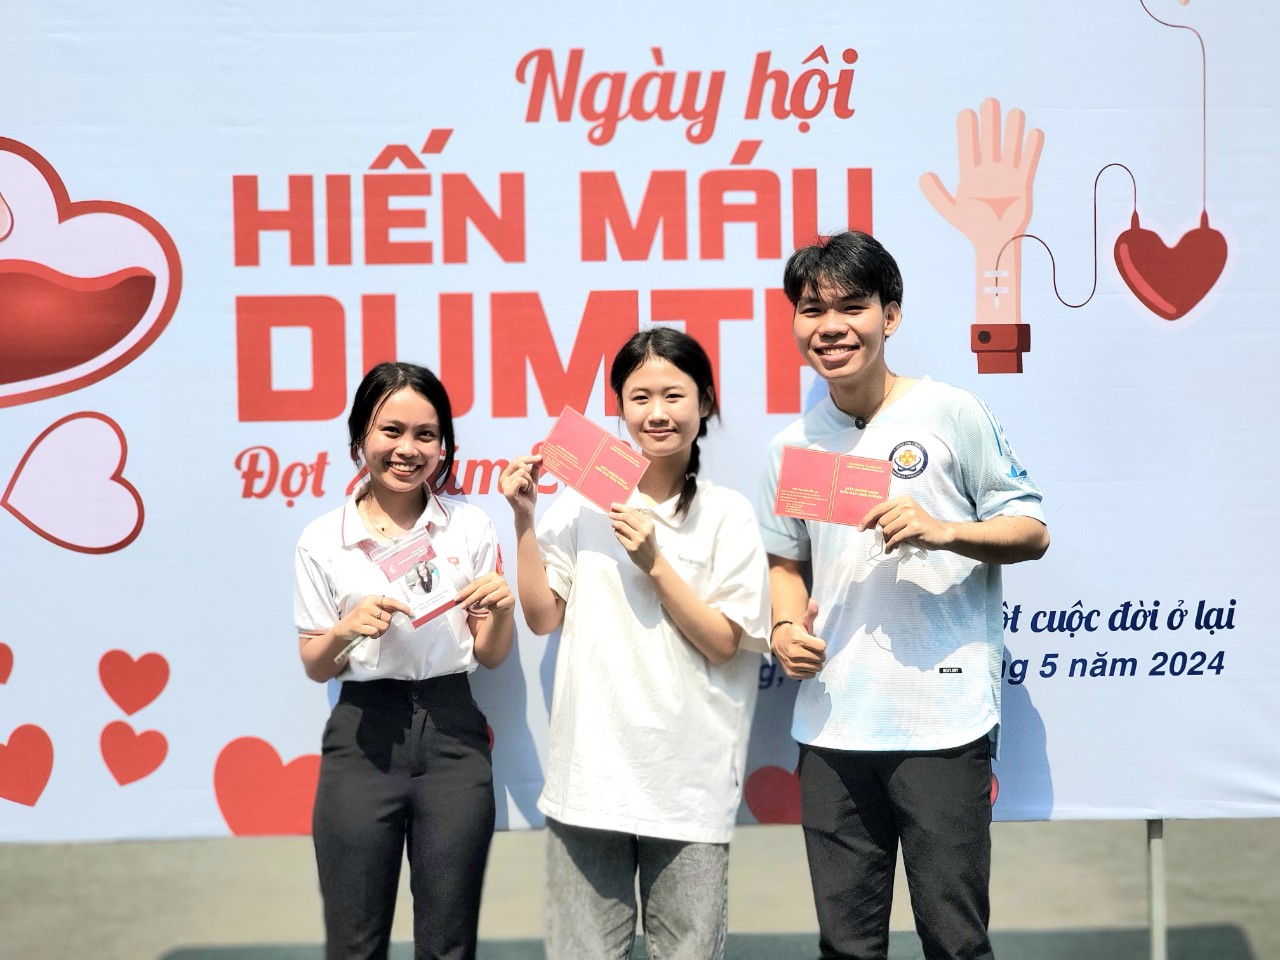 Trường Đại học Kỹ thuật Y - Dược Đà Nẵng tổ chức ngày hội hiến máu tình nguyện năm 2024 (đợt 2) với chủ đề “Một giọt máu cho đi, một cuộc đời ở lại”.